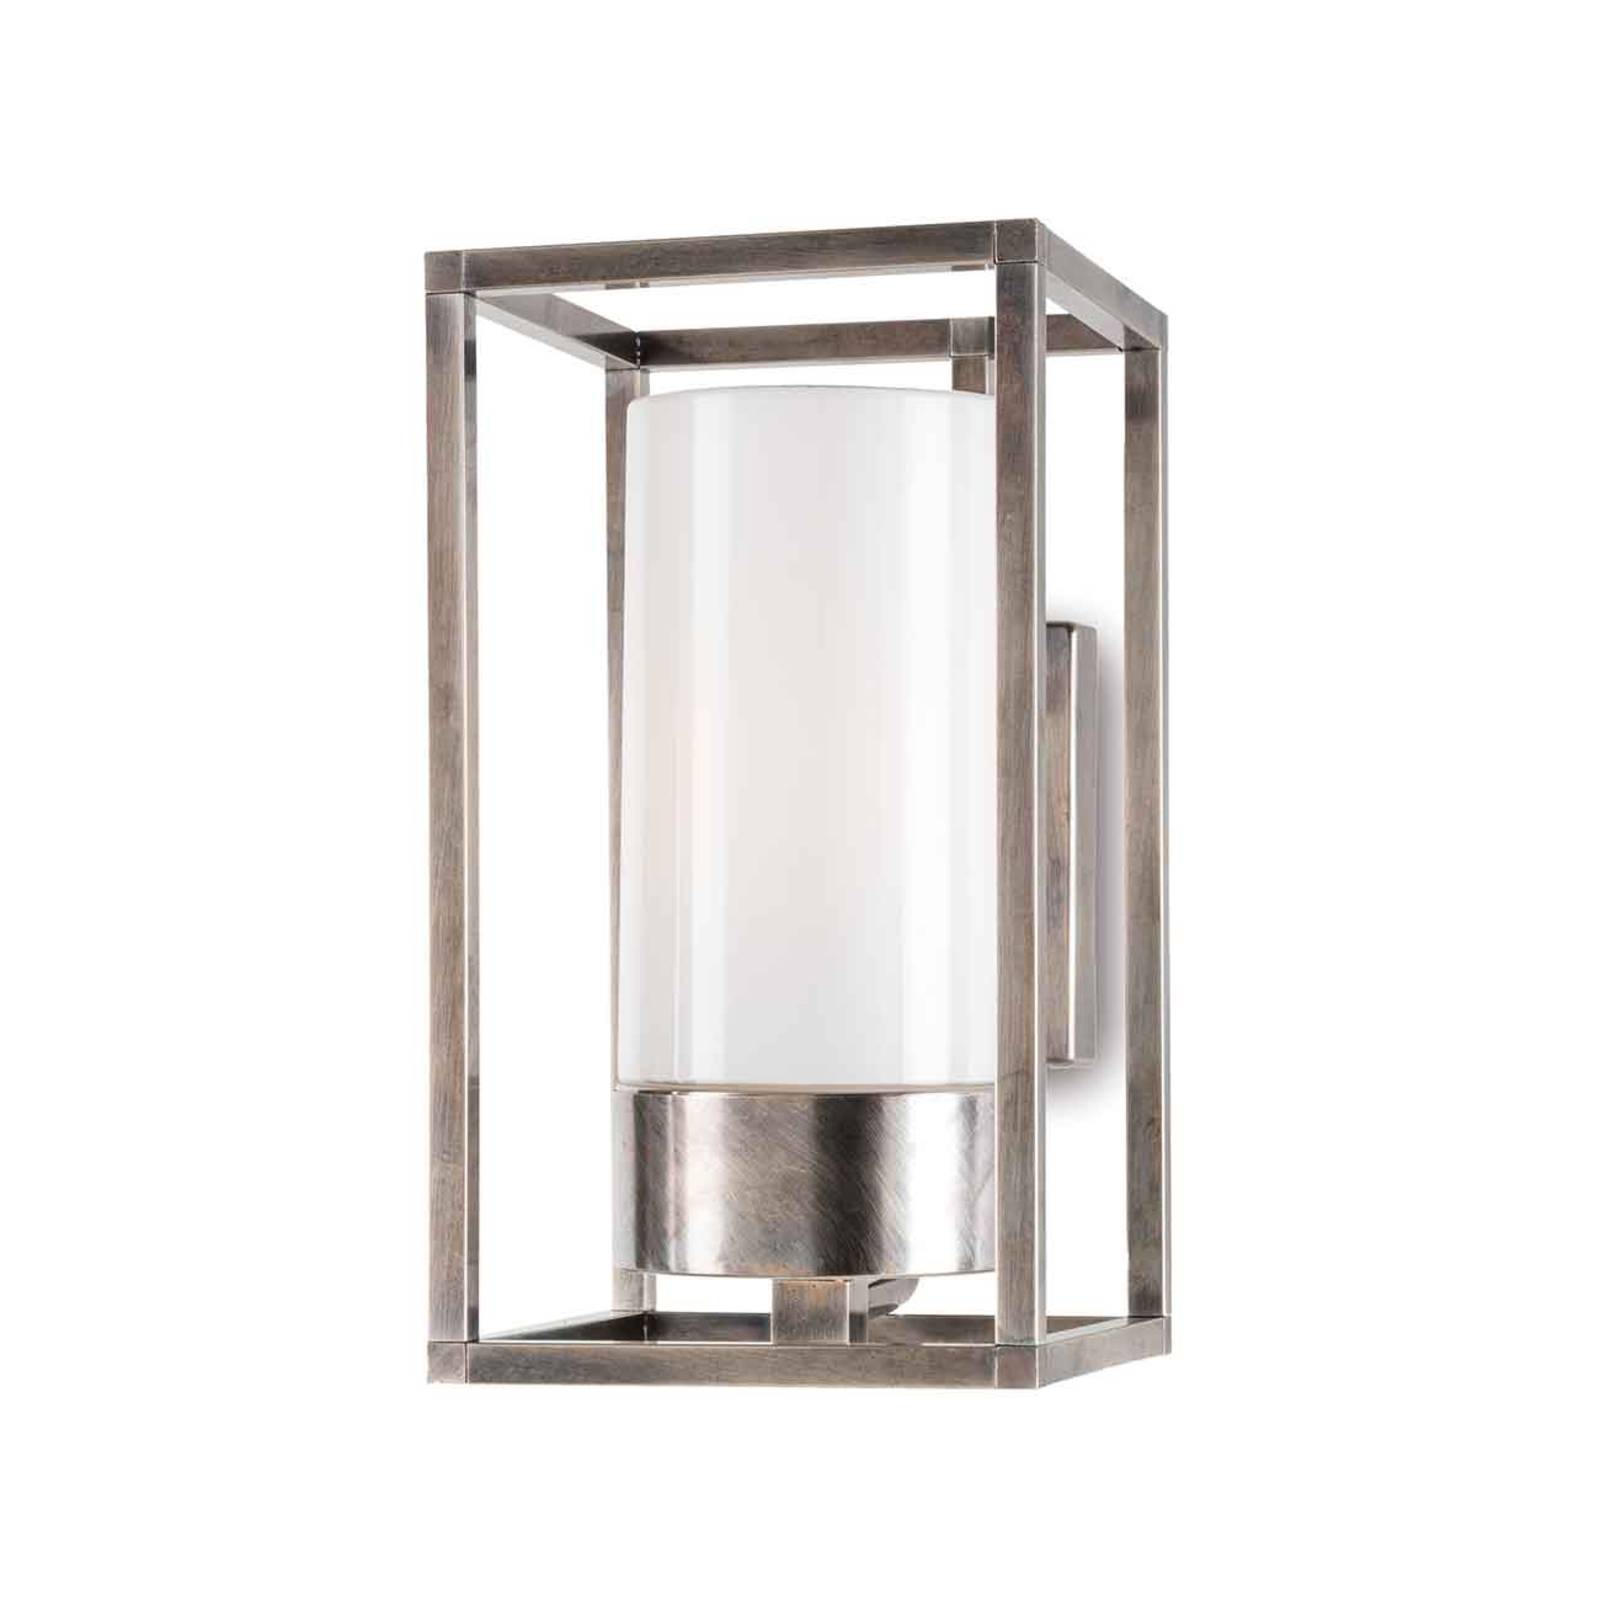 Moretti luce kültéri fali lámpa cubic³ 3364 antik nikkel/opál